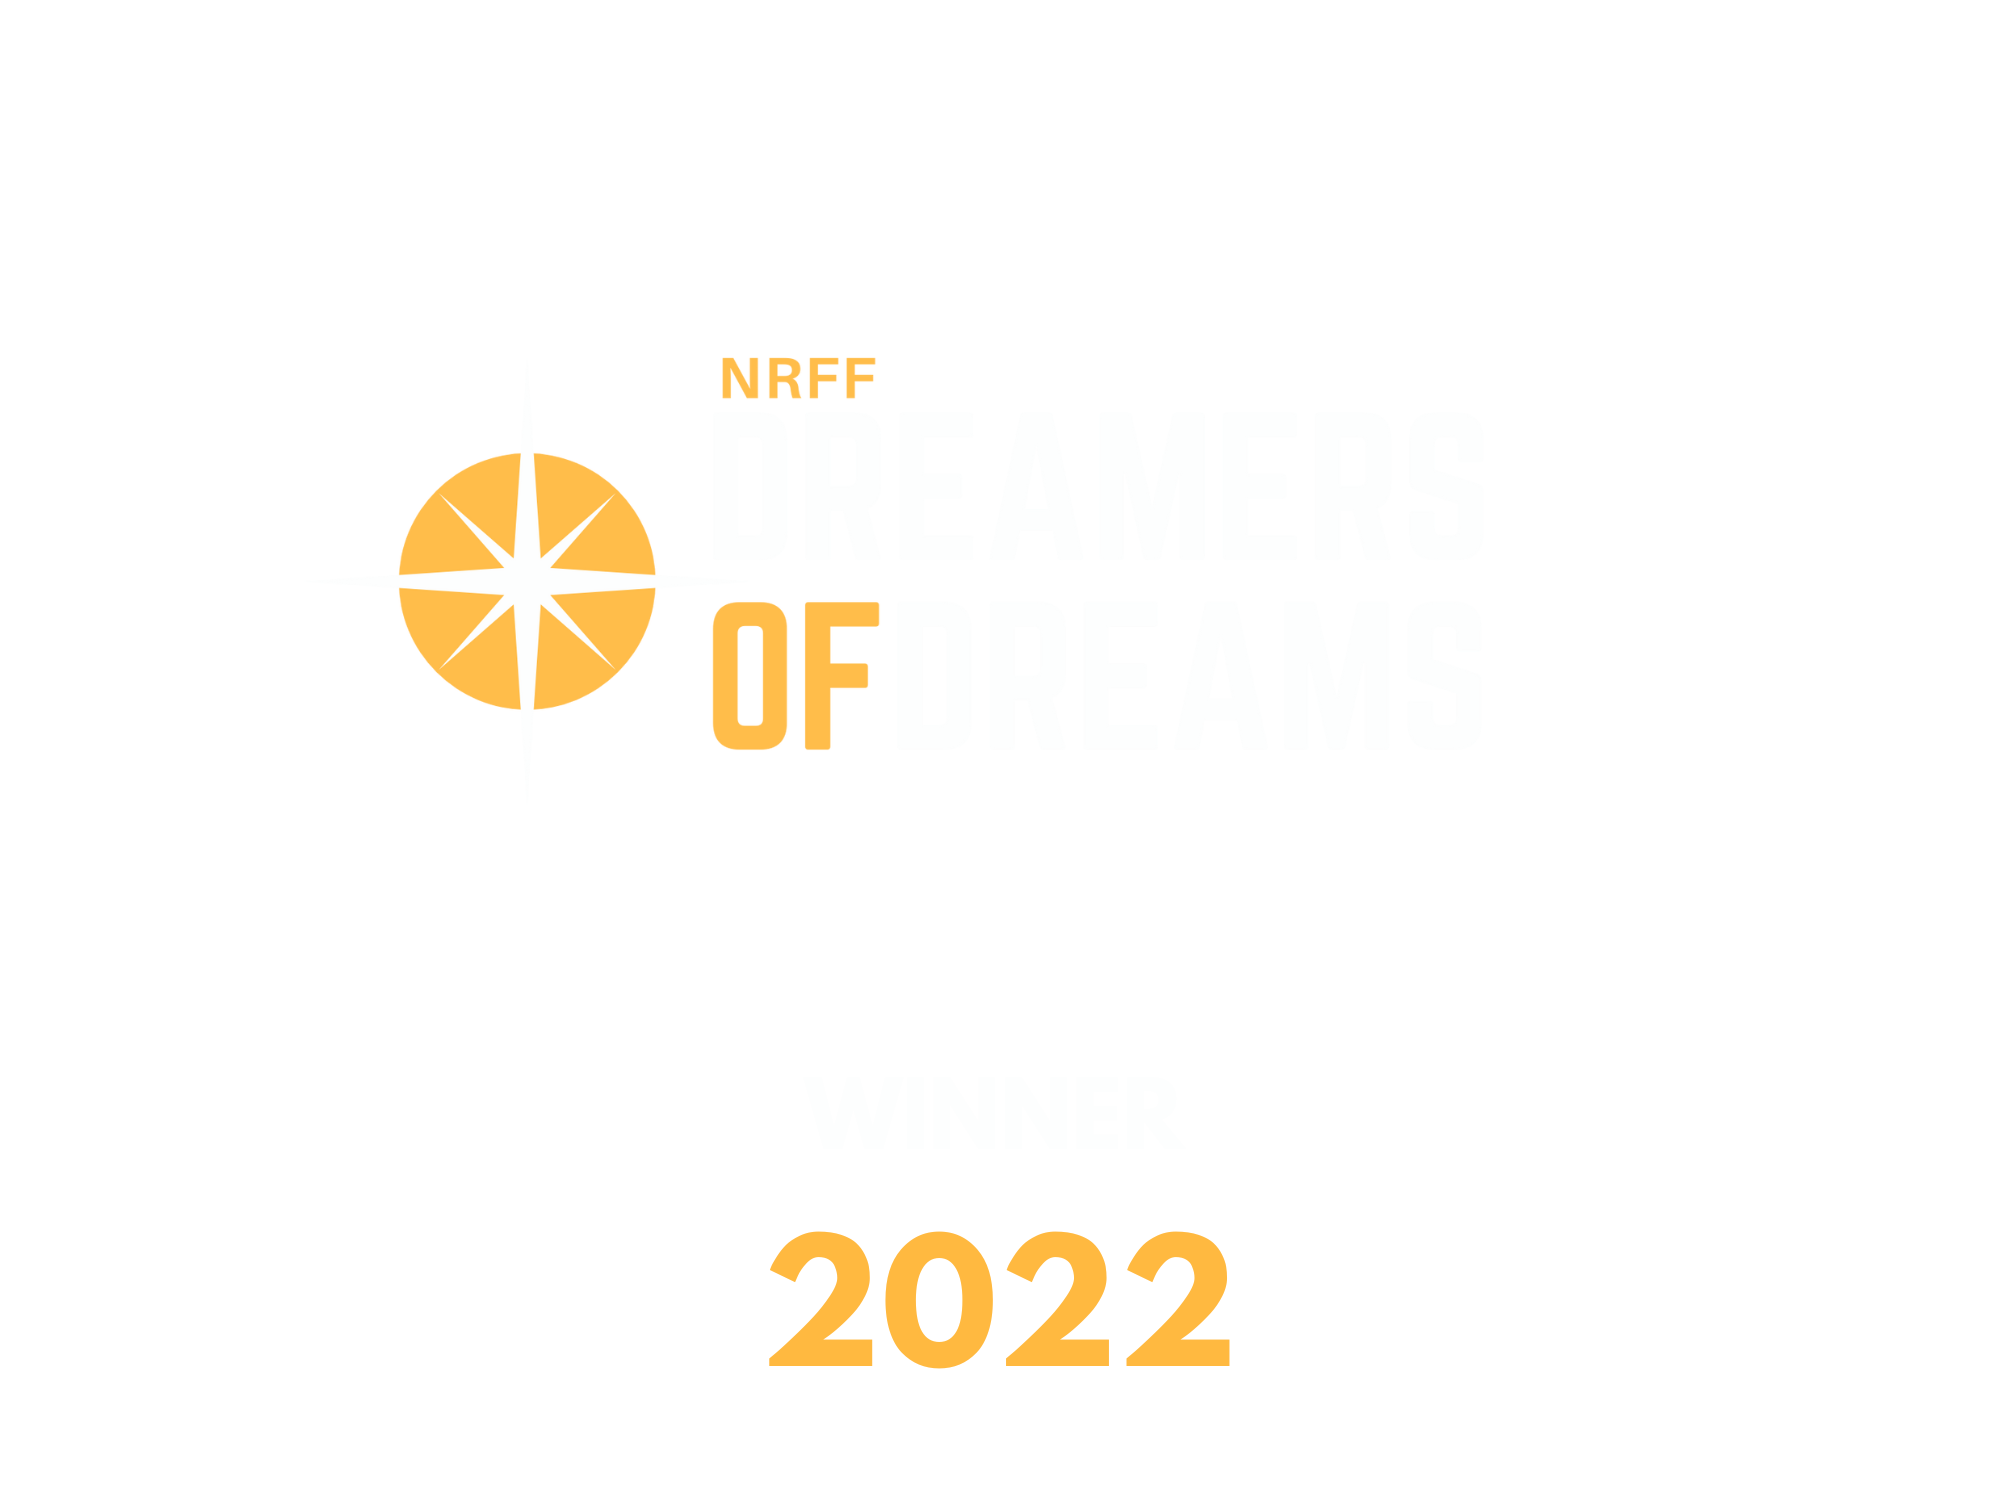 dreamer of dreams winner Best Feature